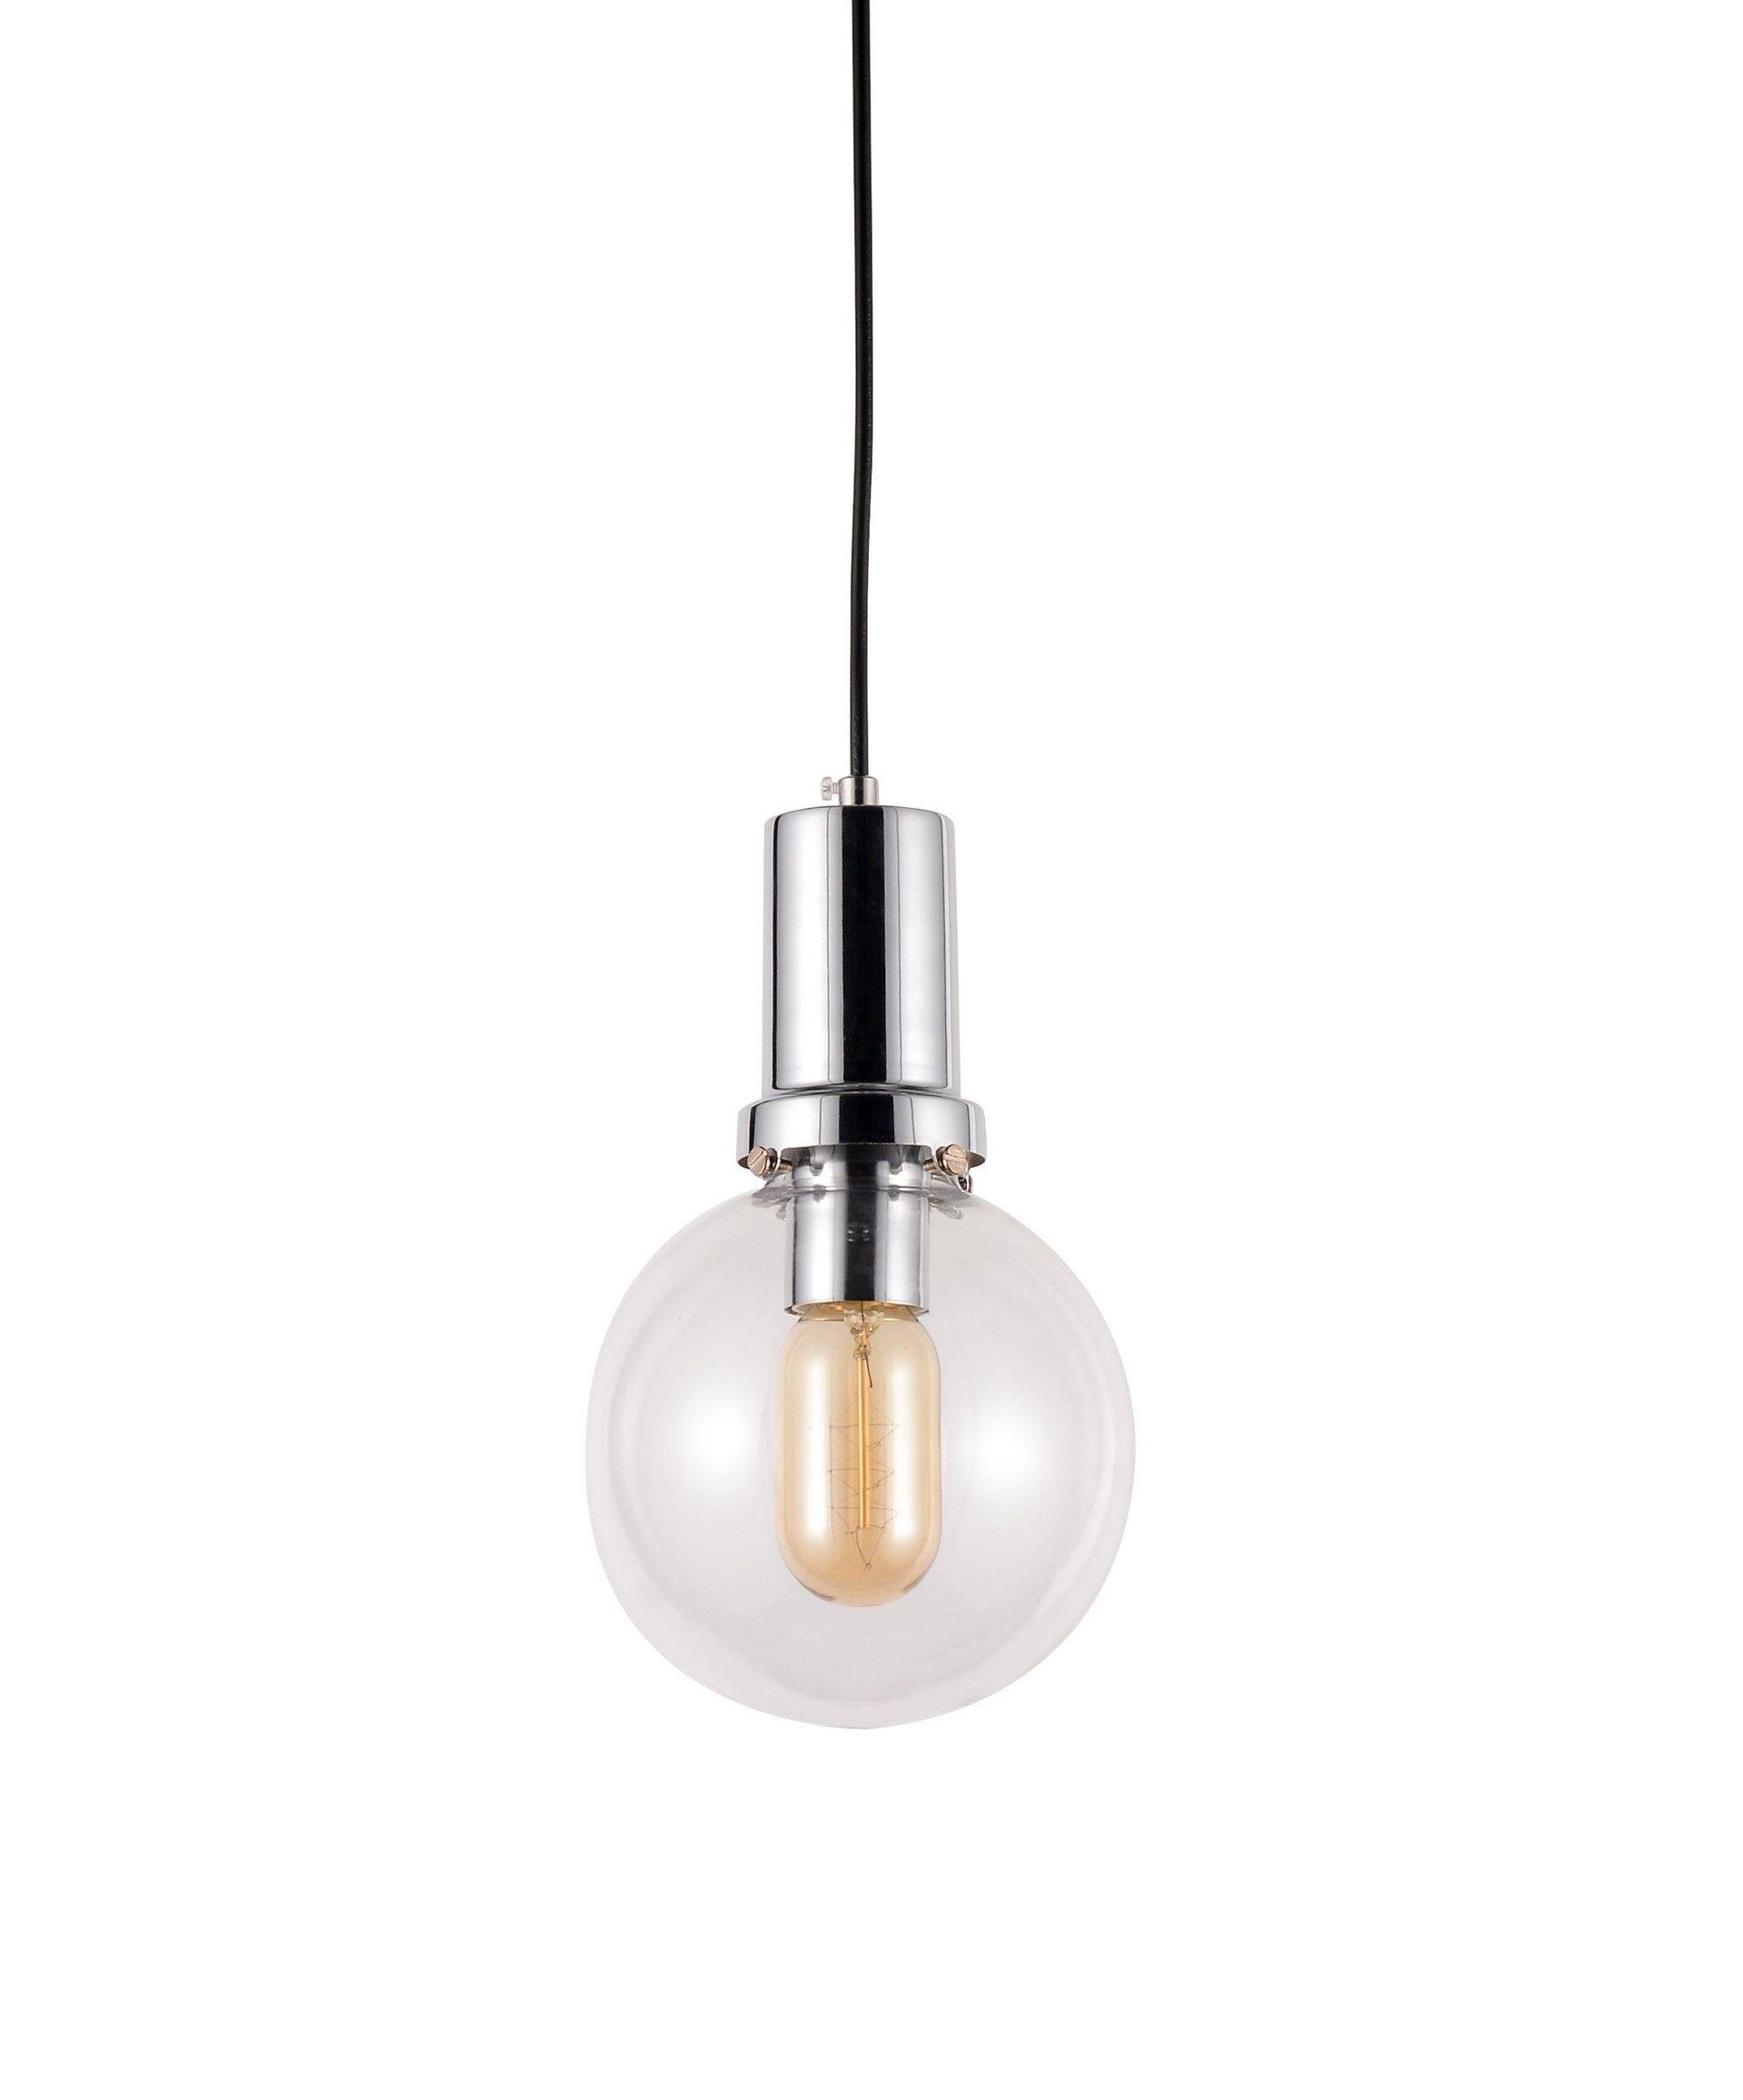 Przezroczysto-chromowana lampa wisząca kula, designerska DORITO - Lumina Deco zdjęcie 1